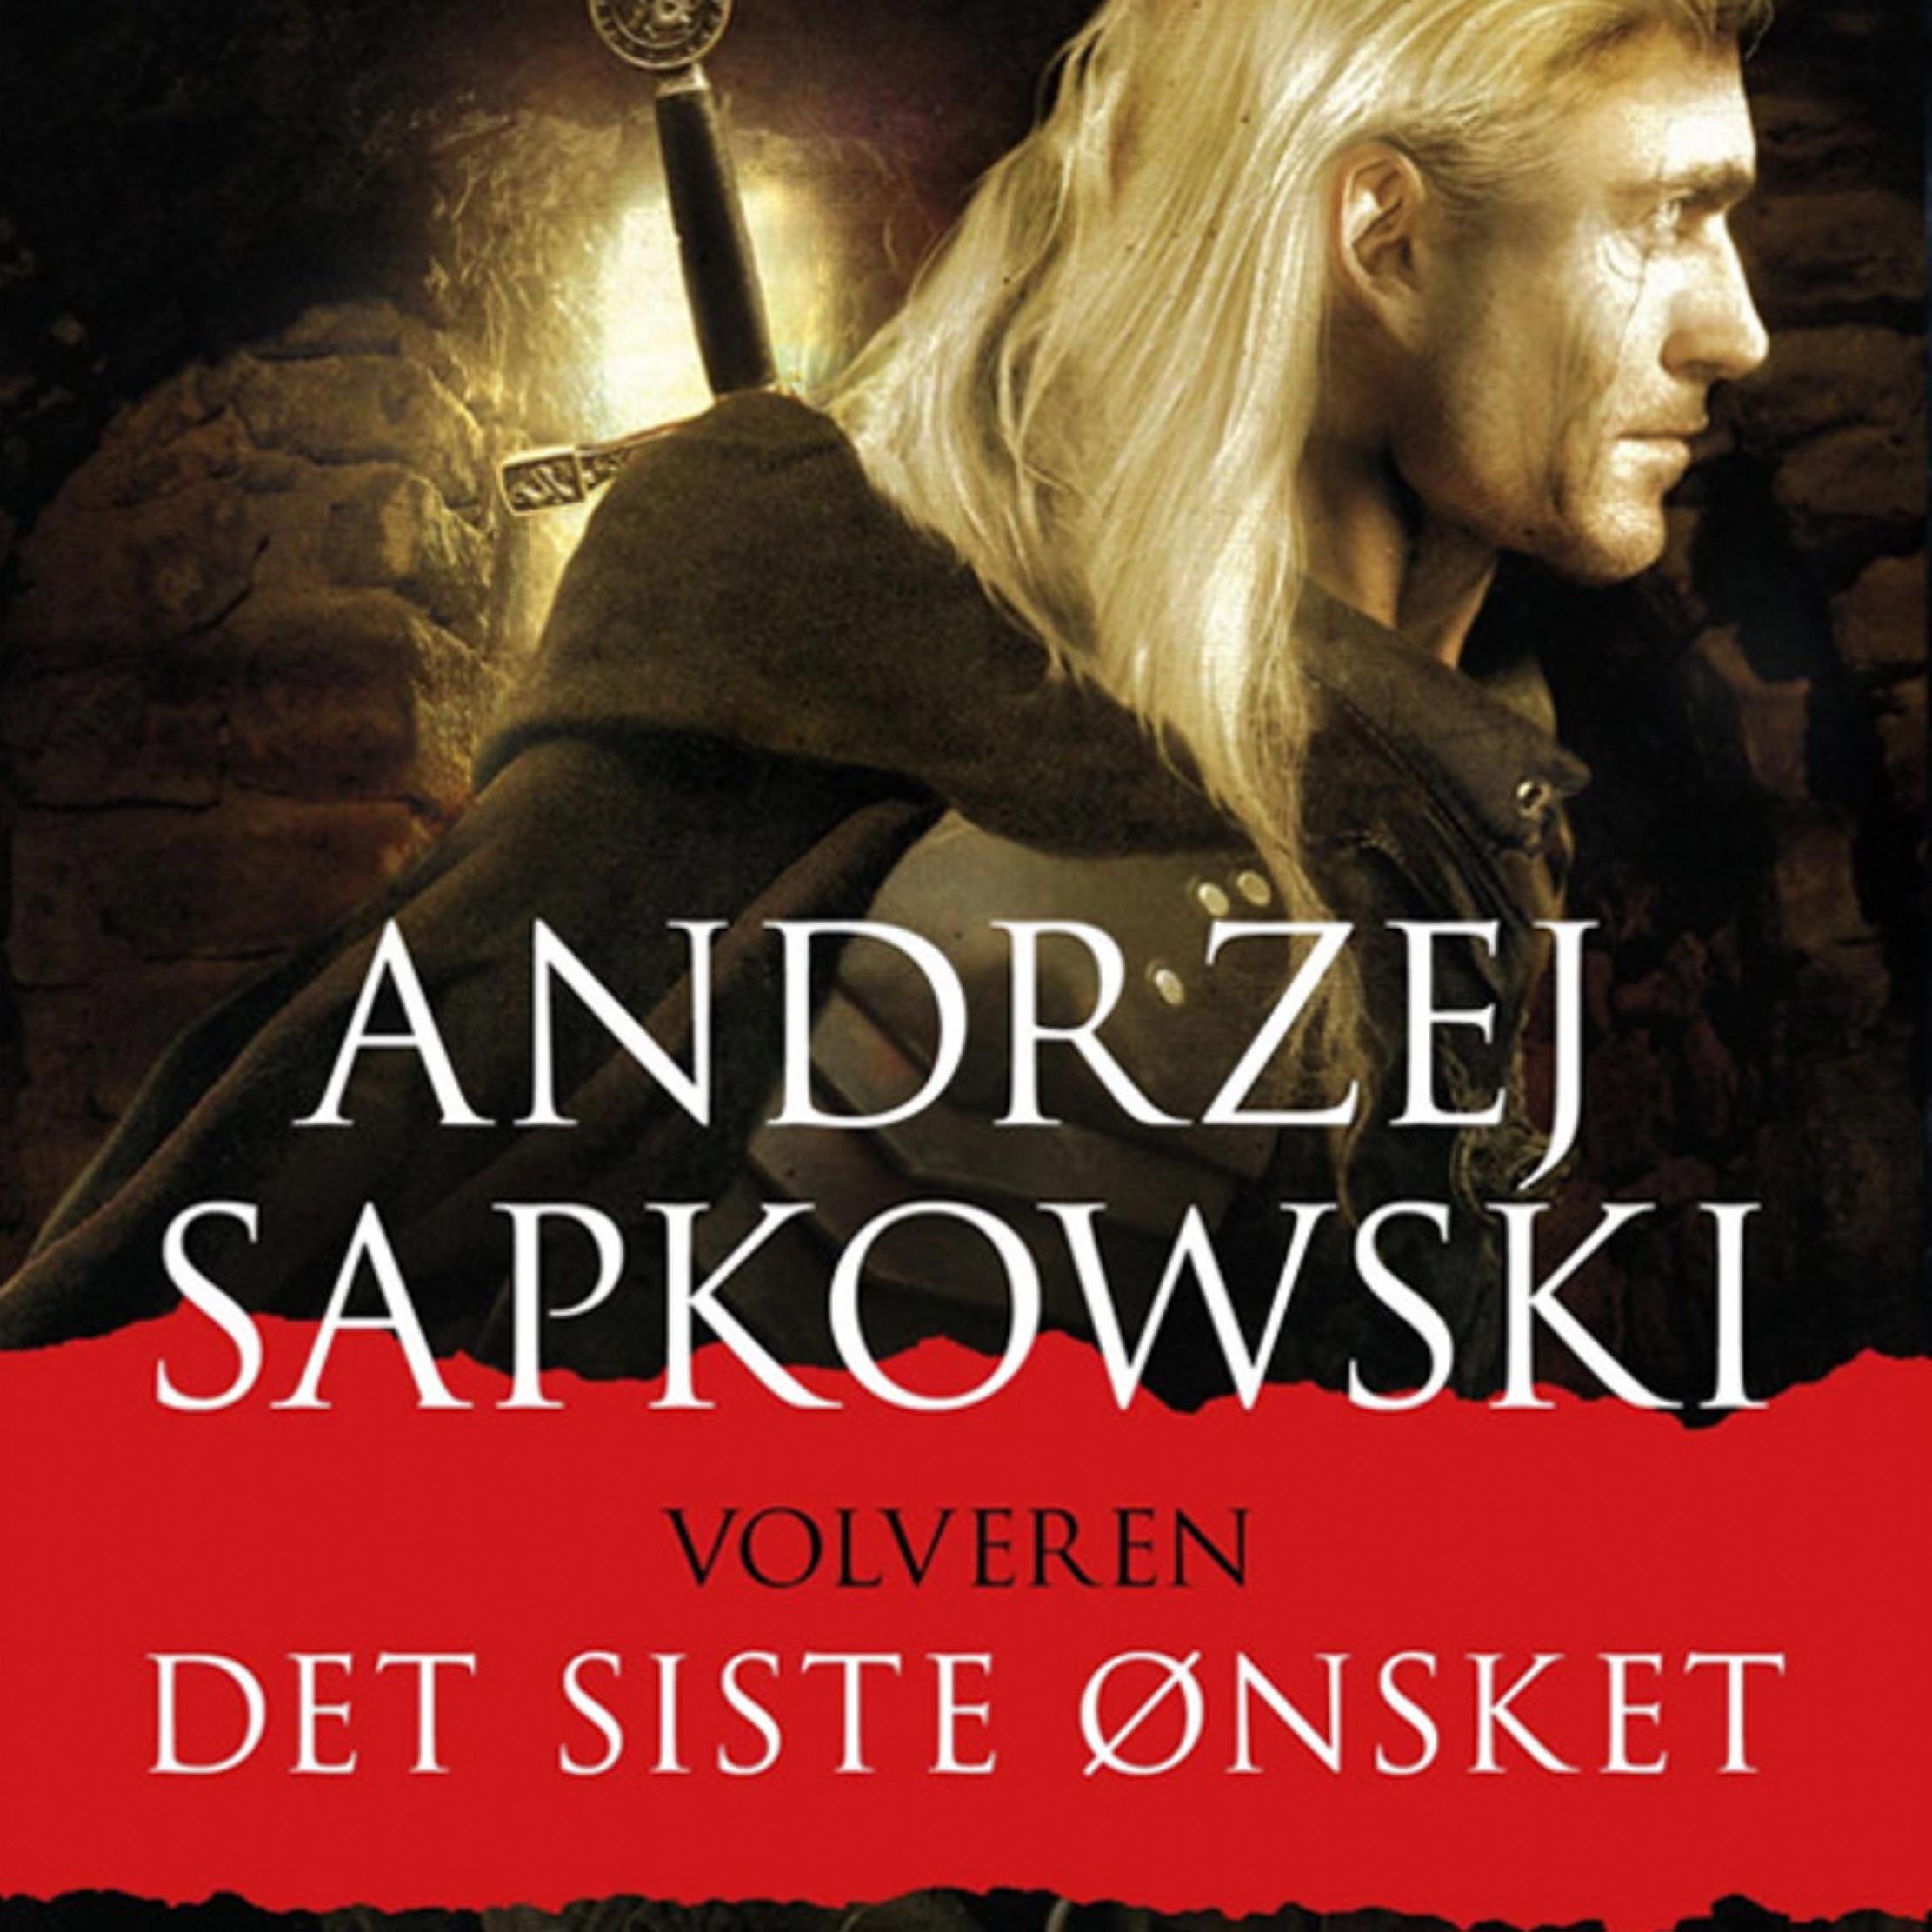 The Witcher på norsk er Volveren (Gyldendal)